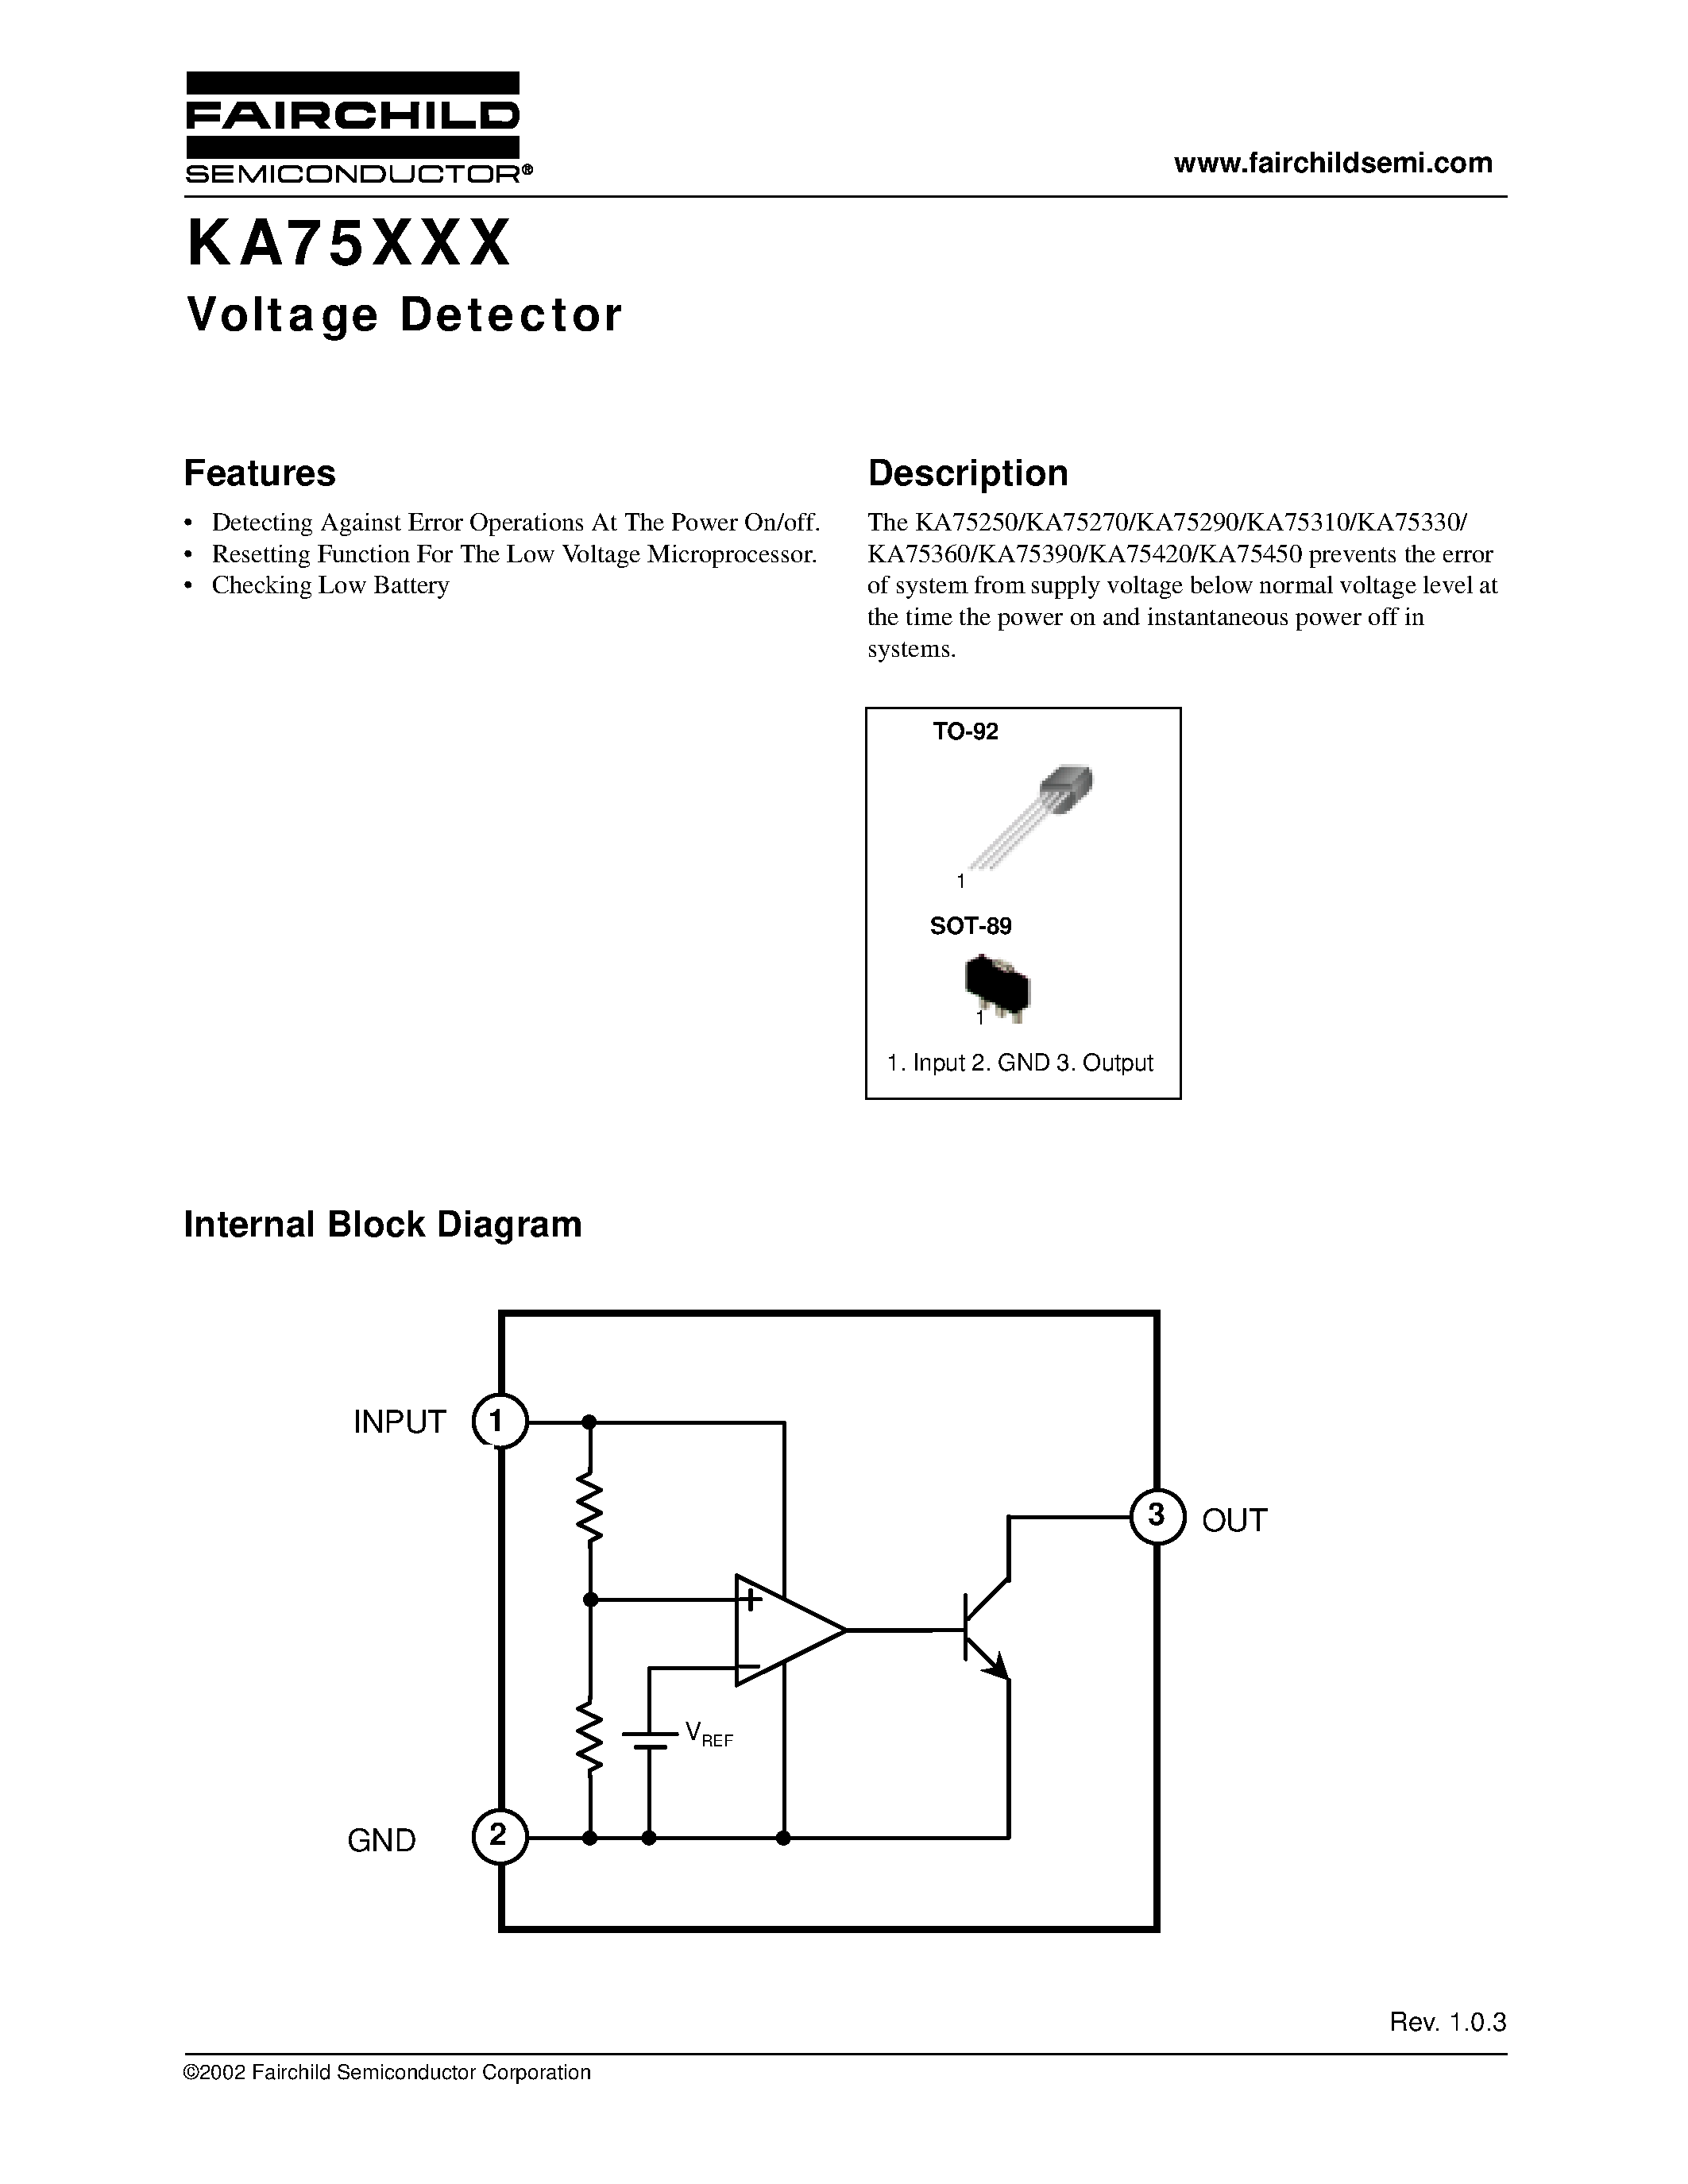 Даташит KA75250Z - Voltage Detector страница 1